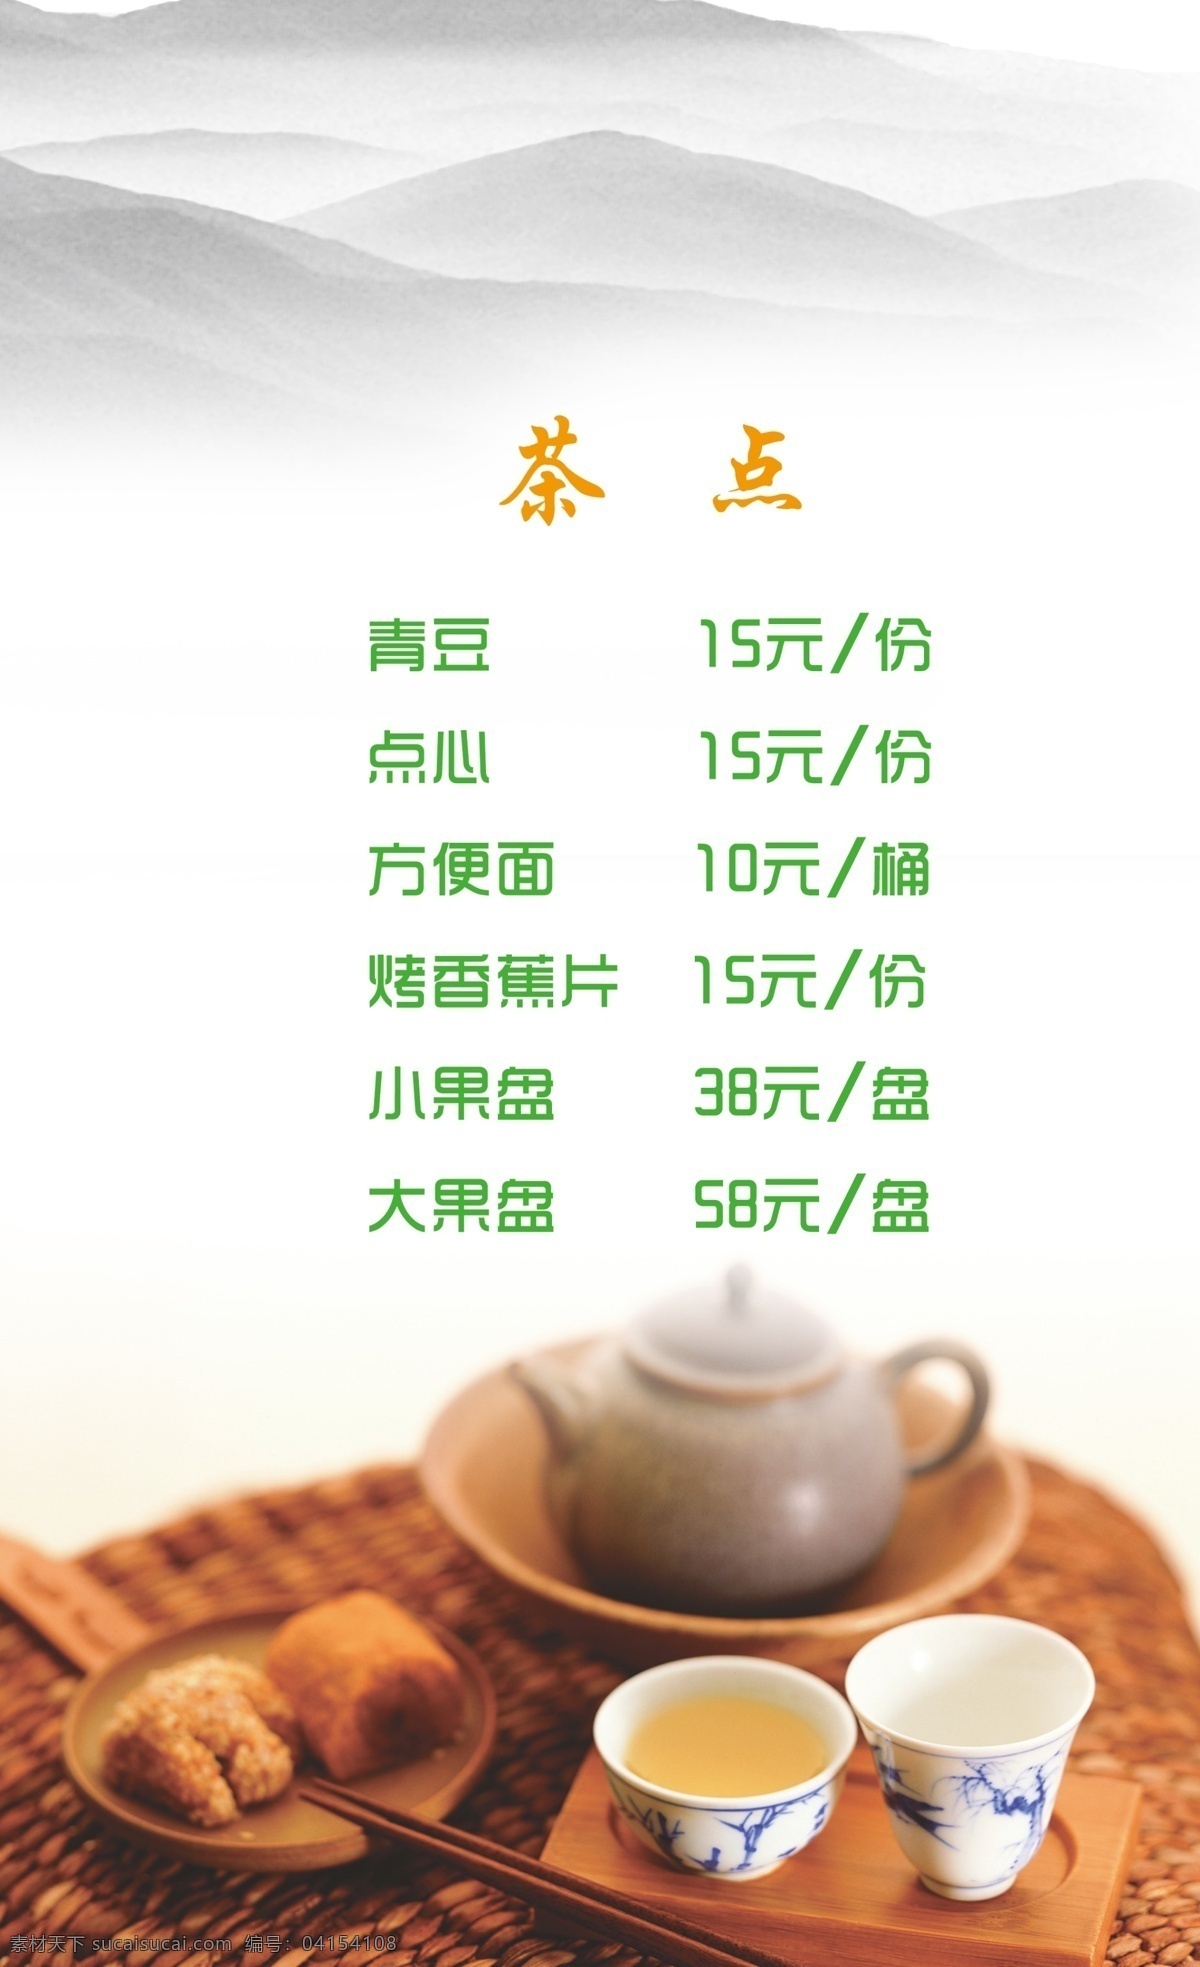 菜单菜谱 茶 茶点 茶水单 茶叶 广告设计模板 源文件 茶水 单 单模 板 茶水价目 psd源文件 餐饮素材